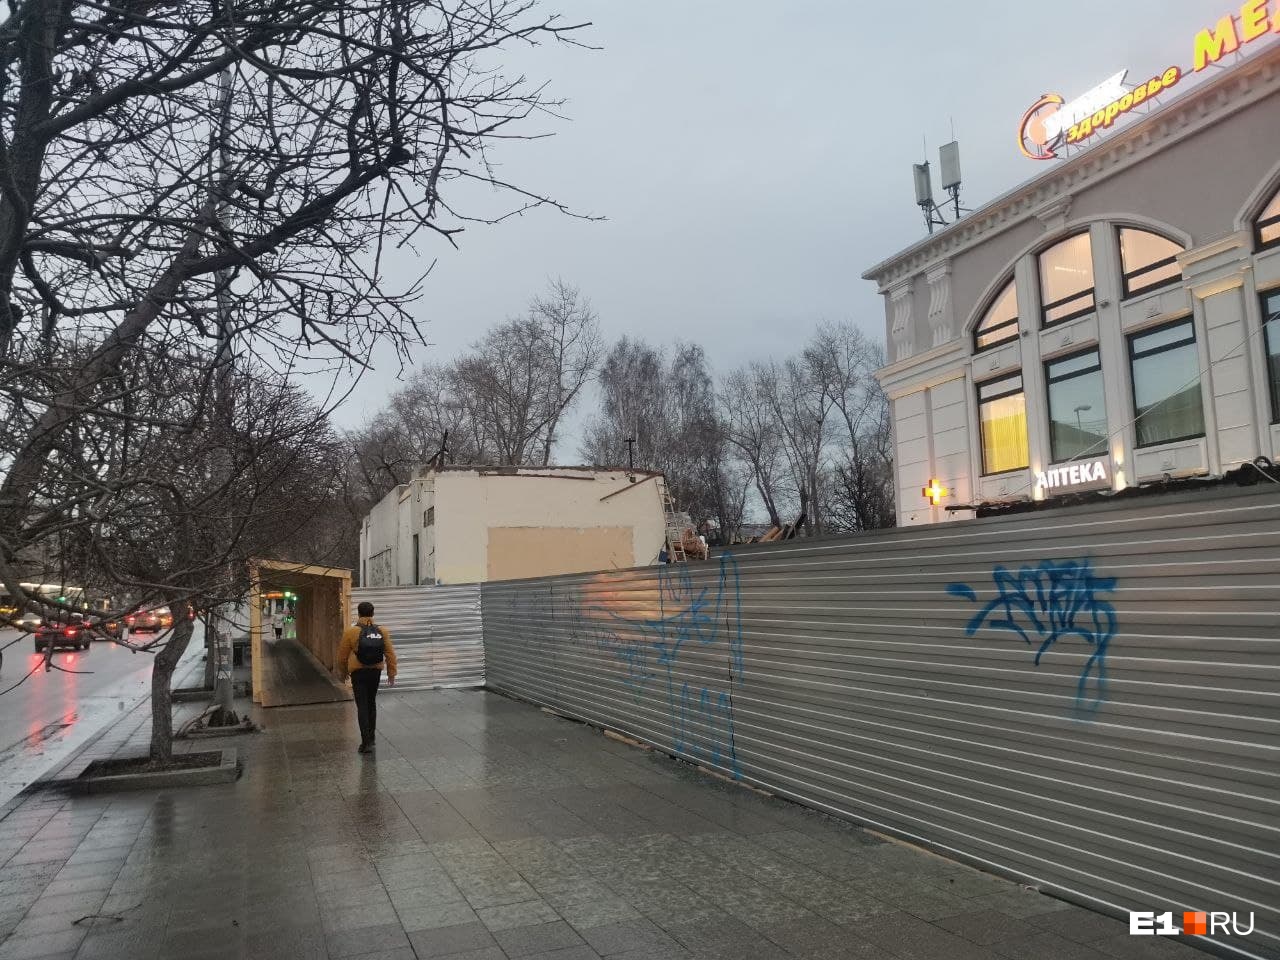 УГМК расширяет свою клинику за счет бывшего детского клуба на улице Малышева